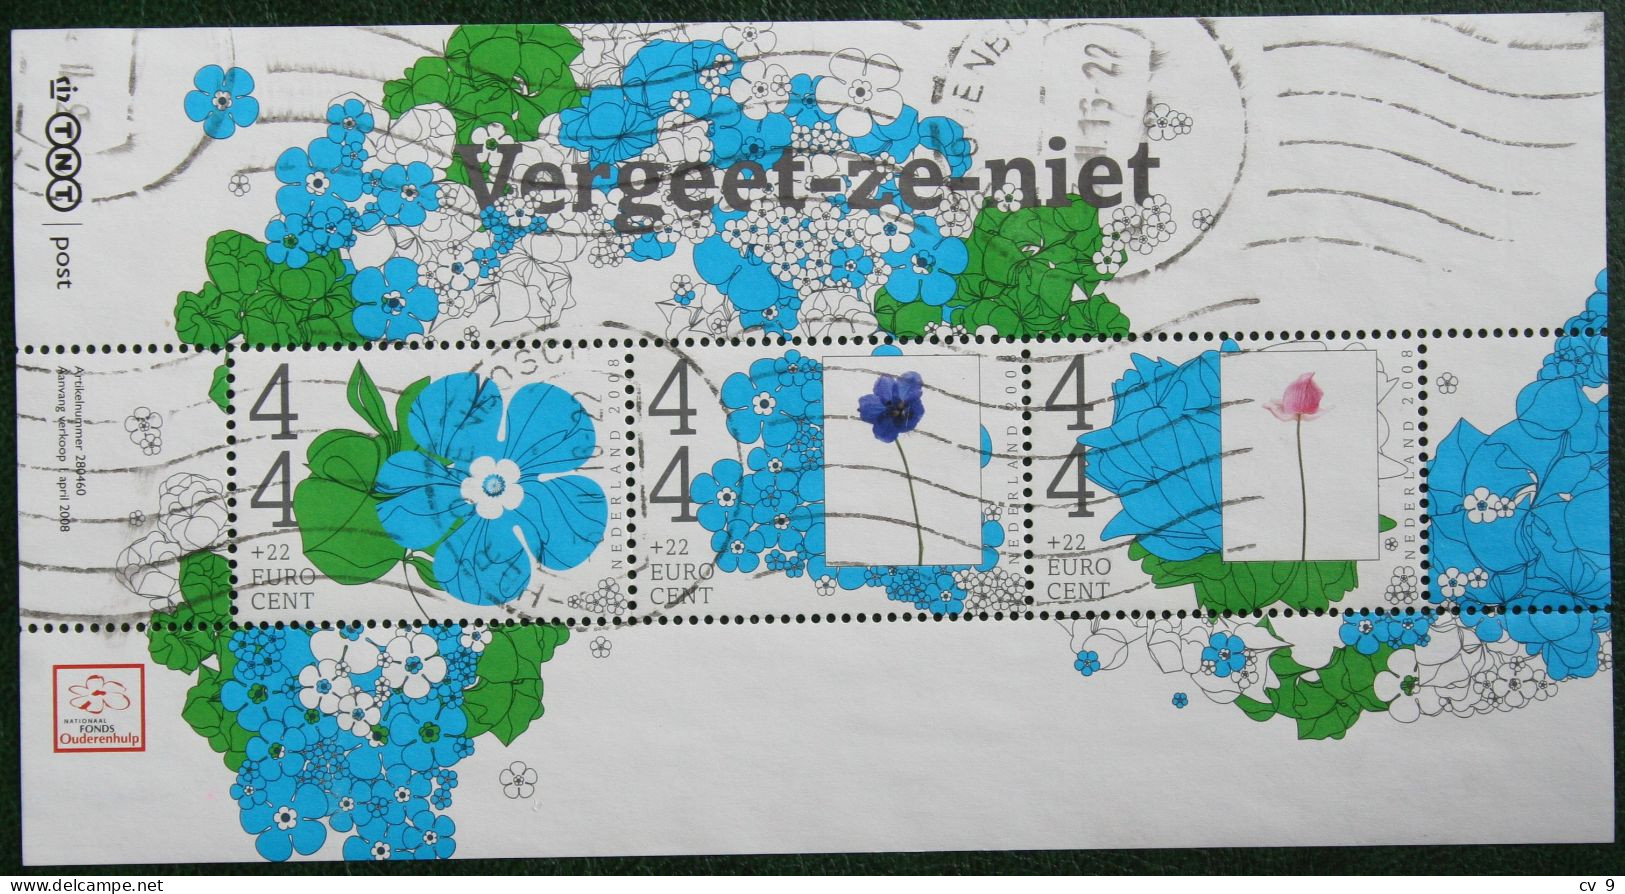 Zomerzegels Vergeet Ze Niet Deel 1; NVPH 2566 (Mi Block 109 2568-2570) 2008  Gestempeld USED NEDERLAND / NIEDERLANDE - Used Stamps